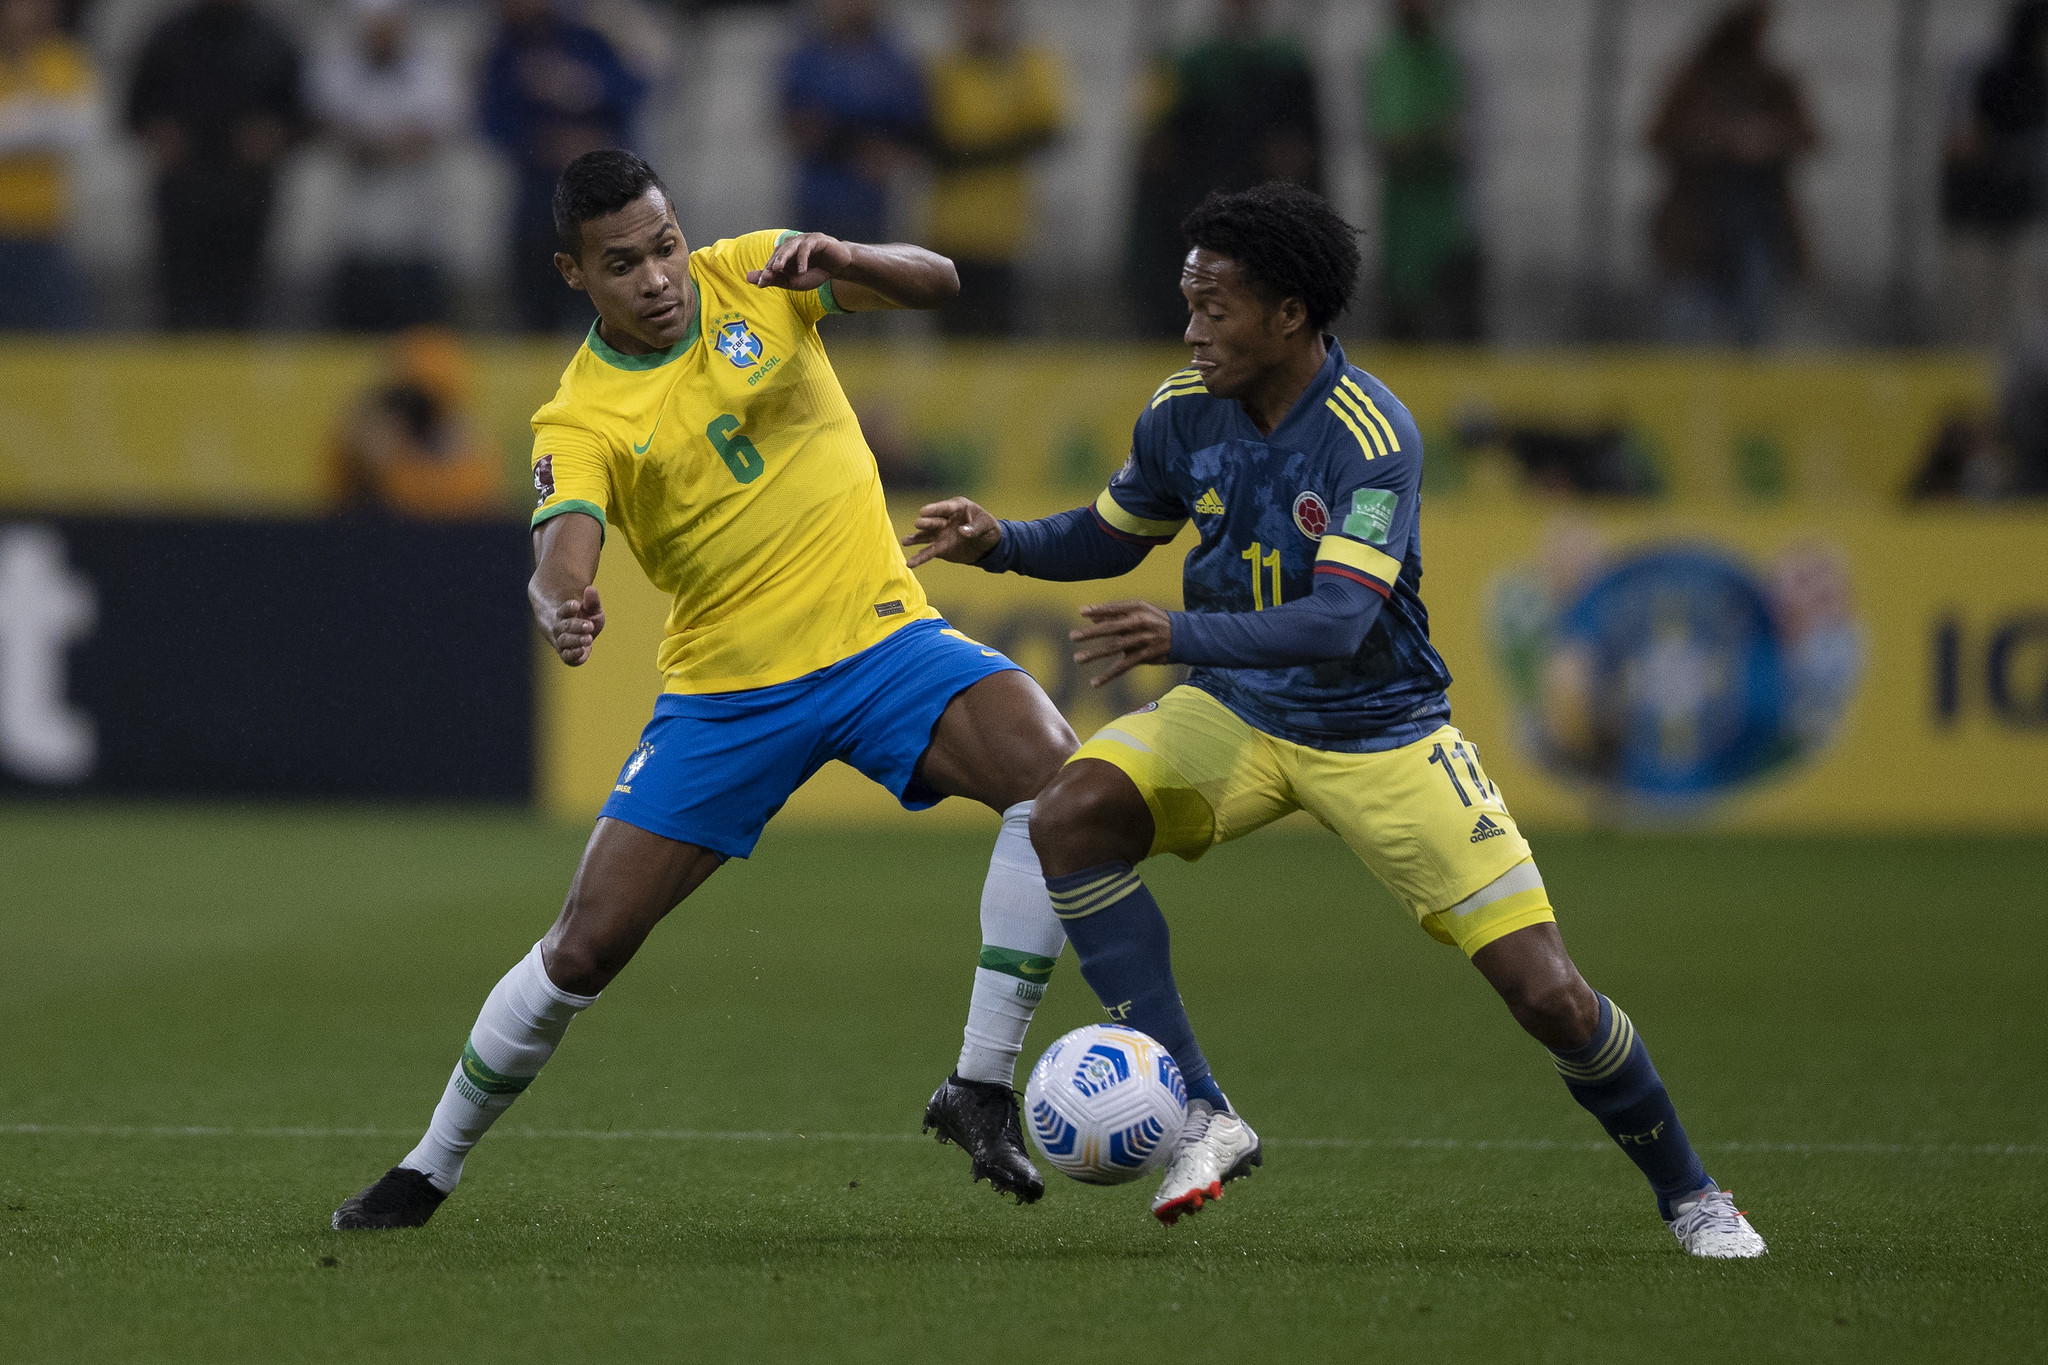 É HOJE! Prefeitura da Serra transmite estreia do Brasil na Copa em